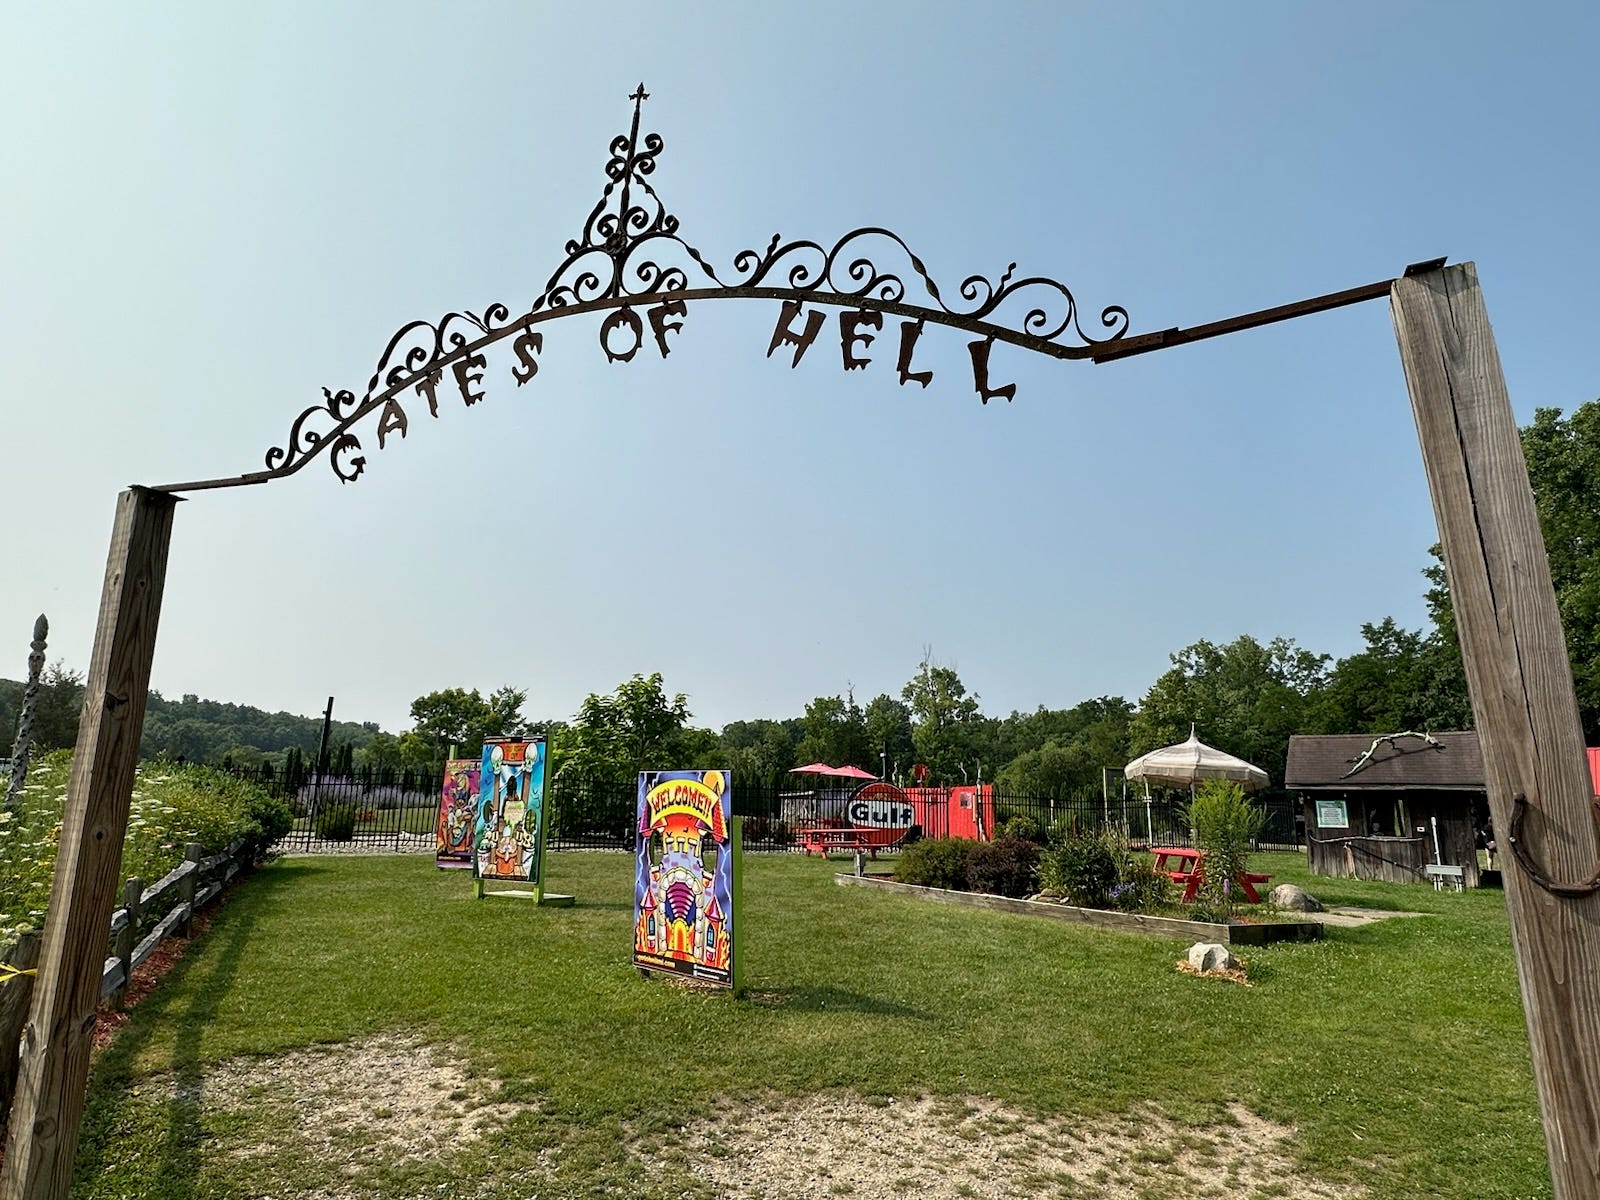 Metal Gates of Hell überragt eine Auswahl toller Fototermine in Hell, Michigan